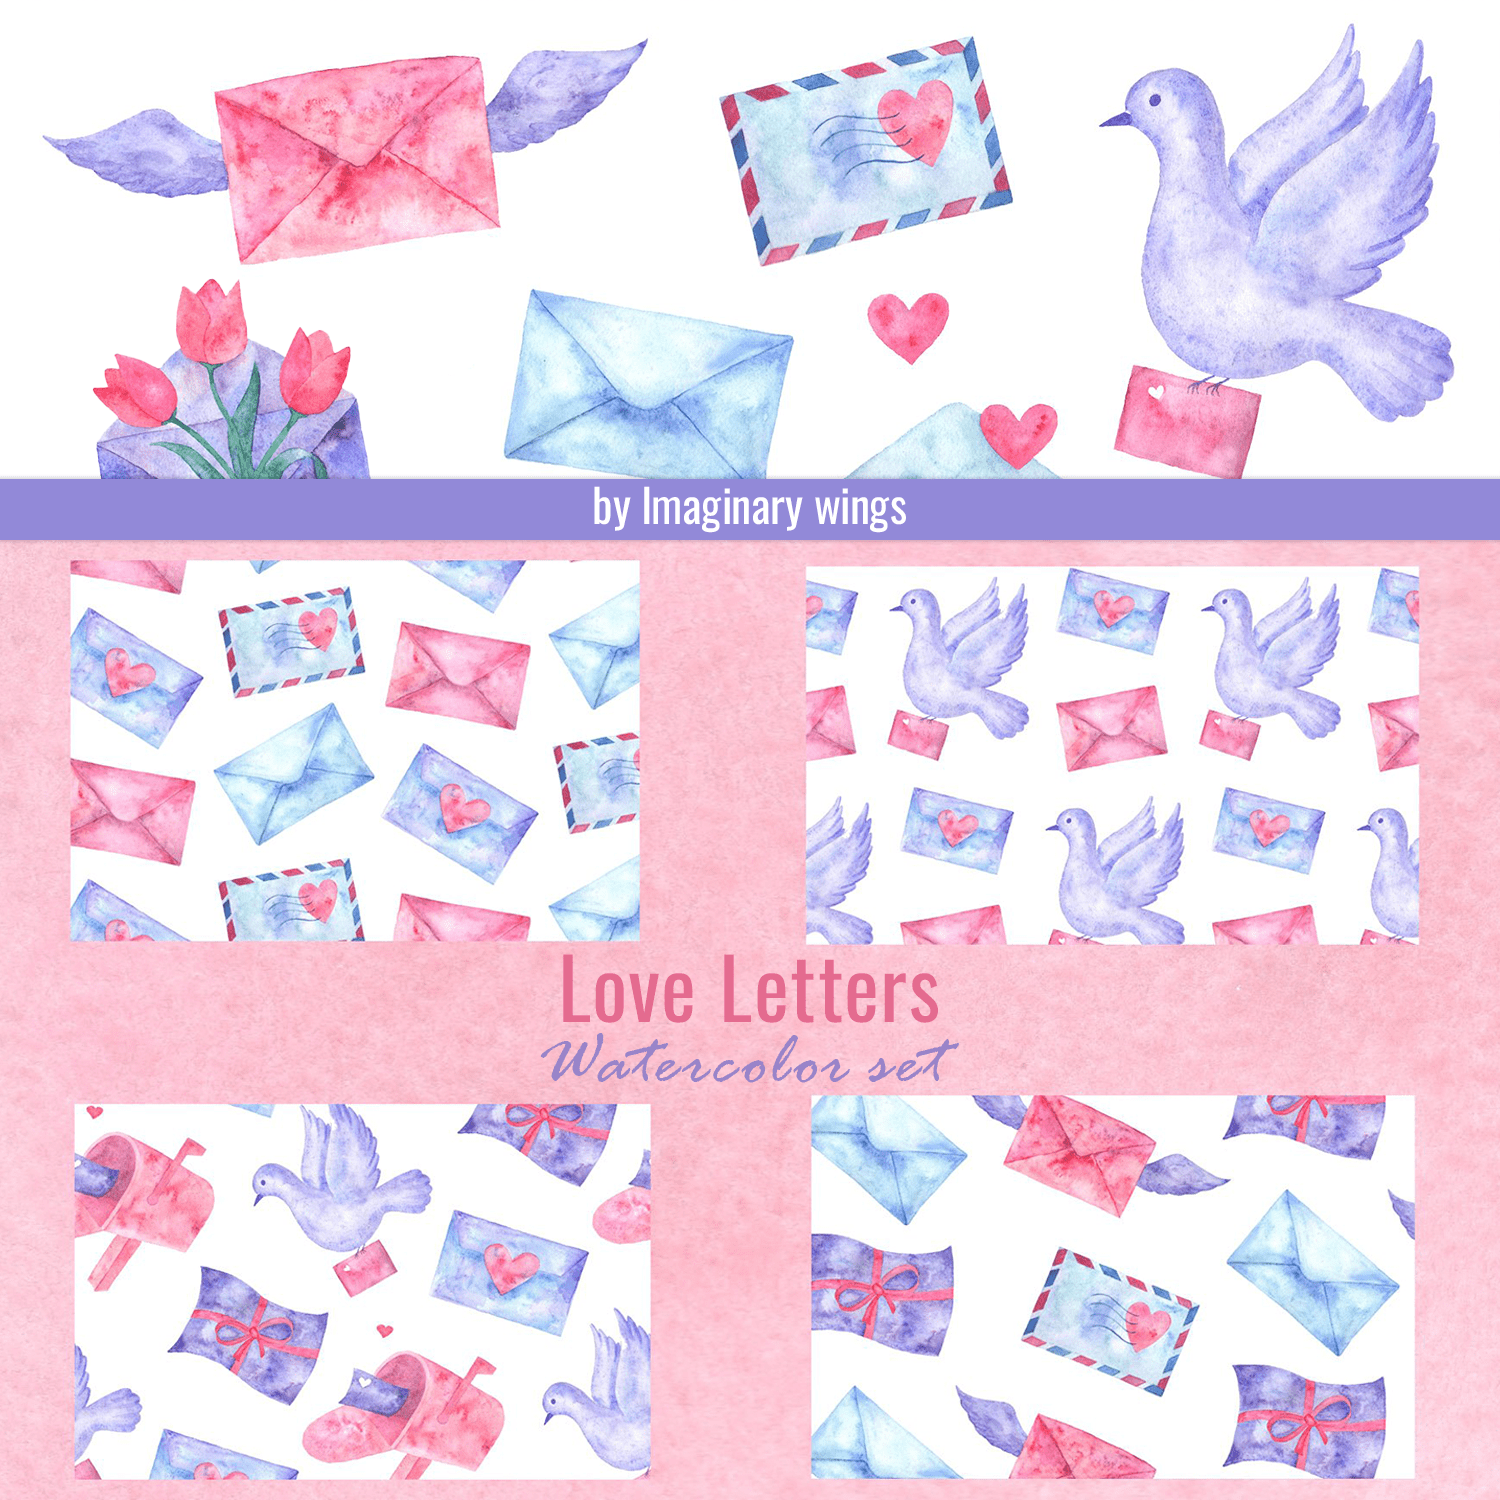 love letters. watercolor set.